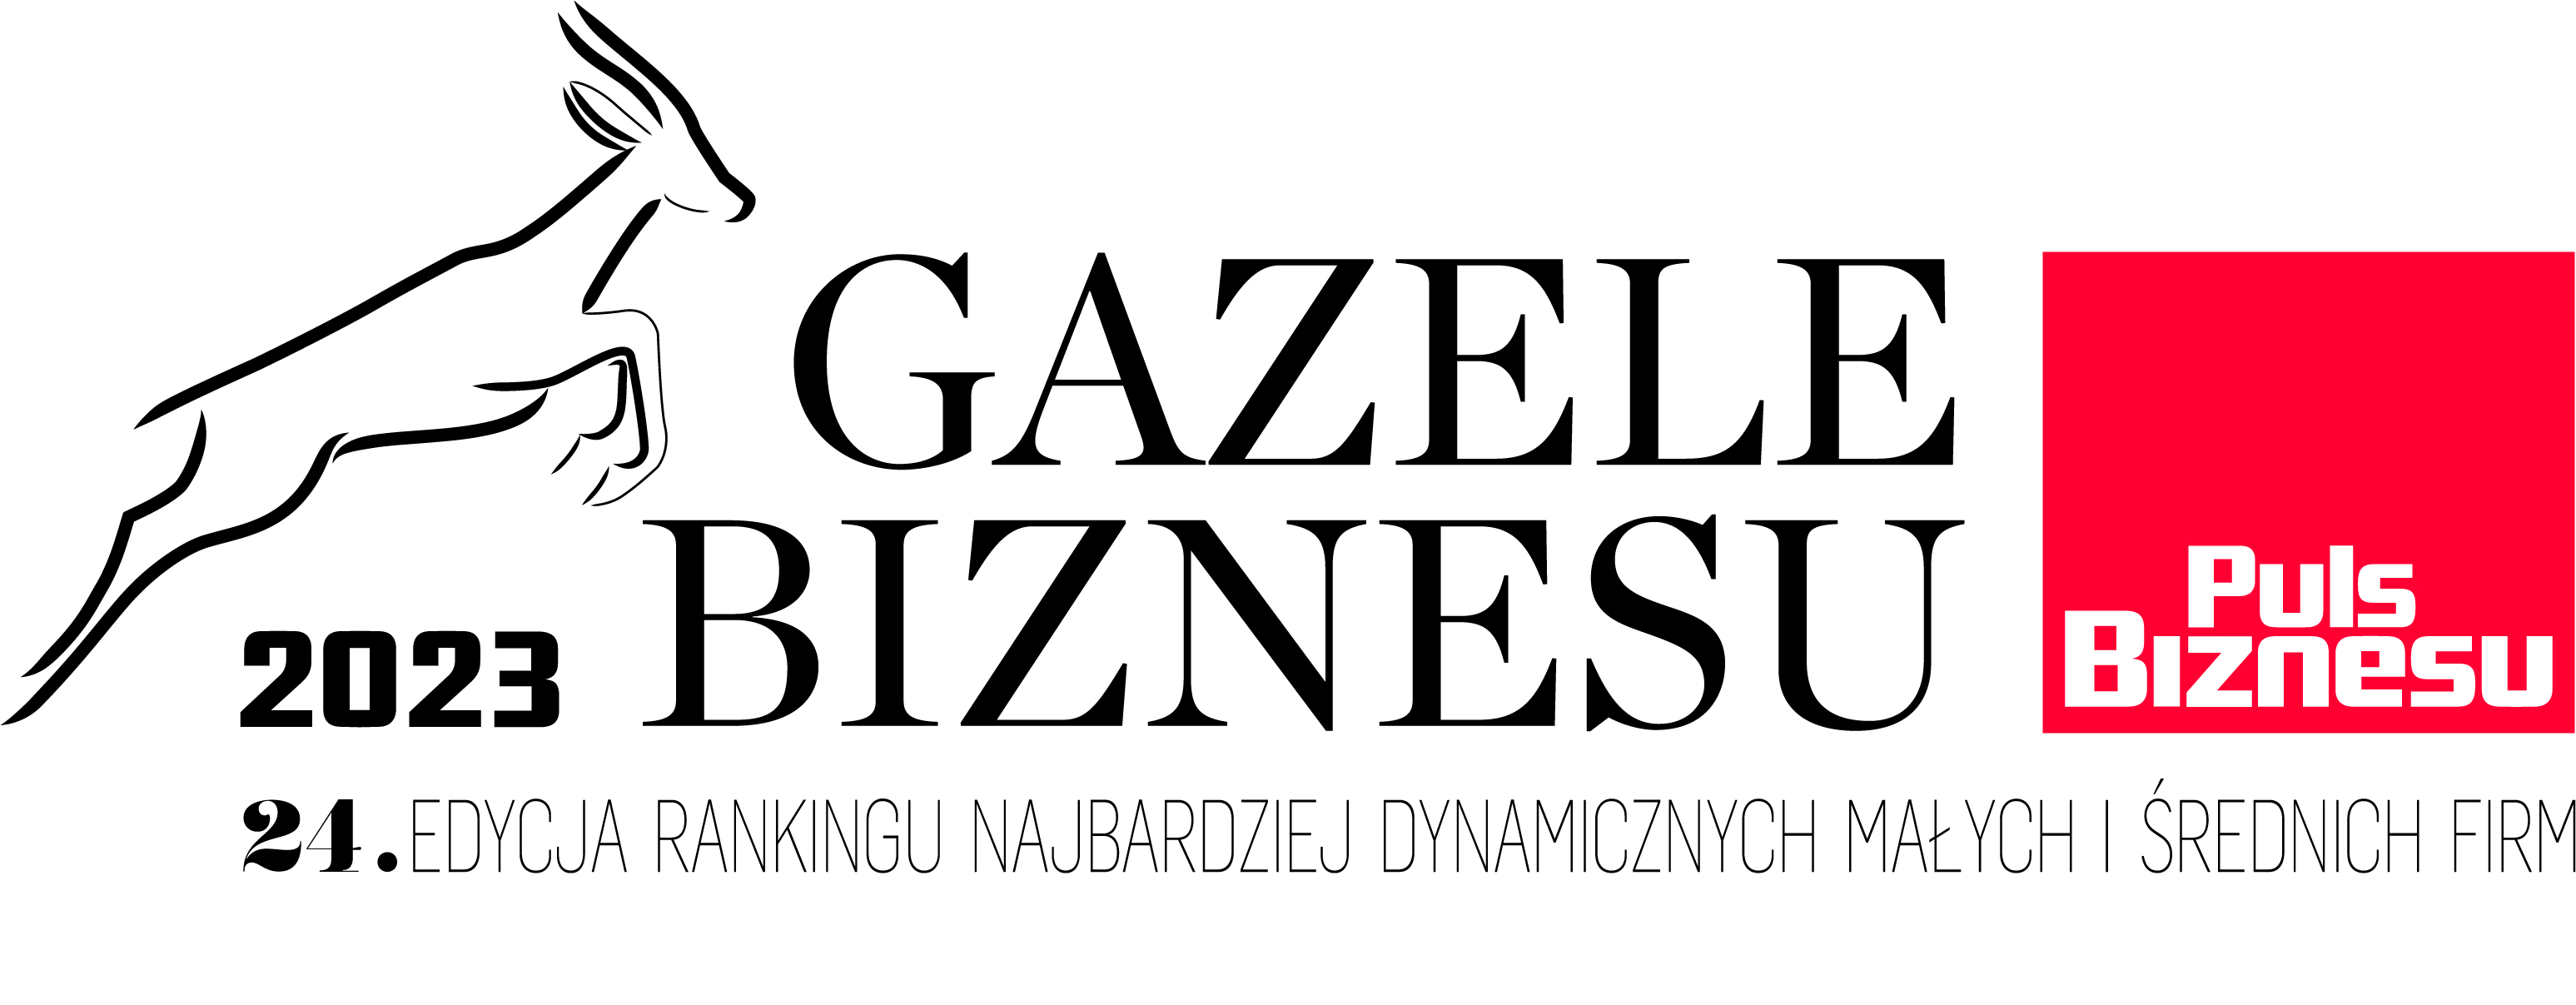 Gazele Biznesu 2023